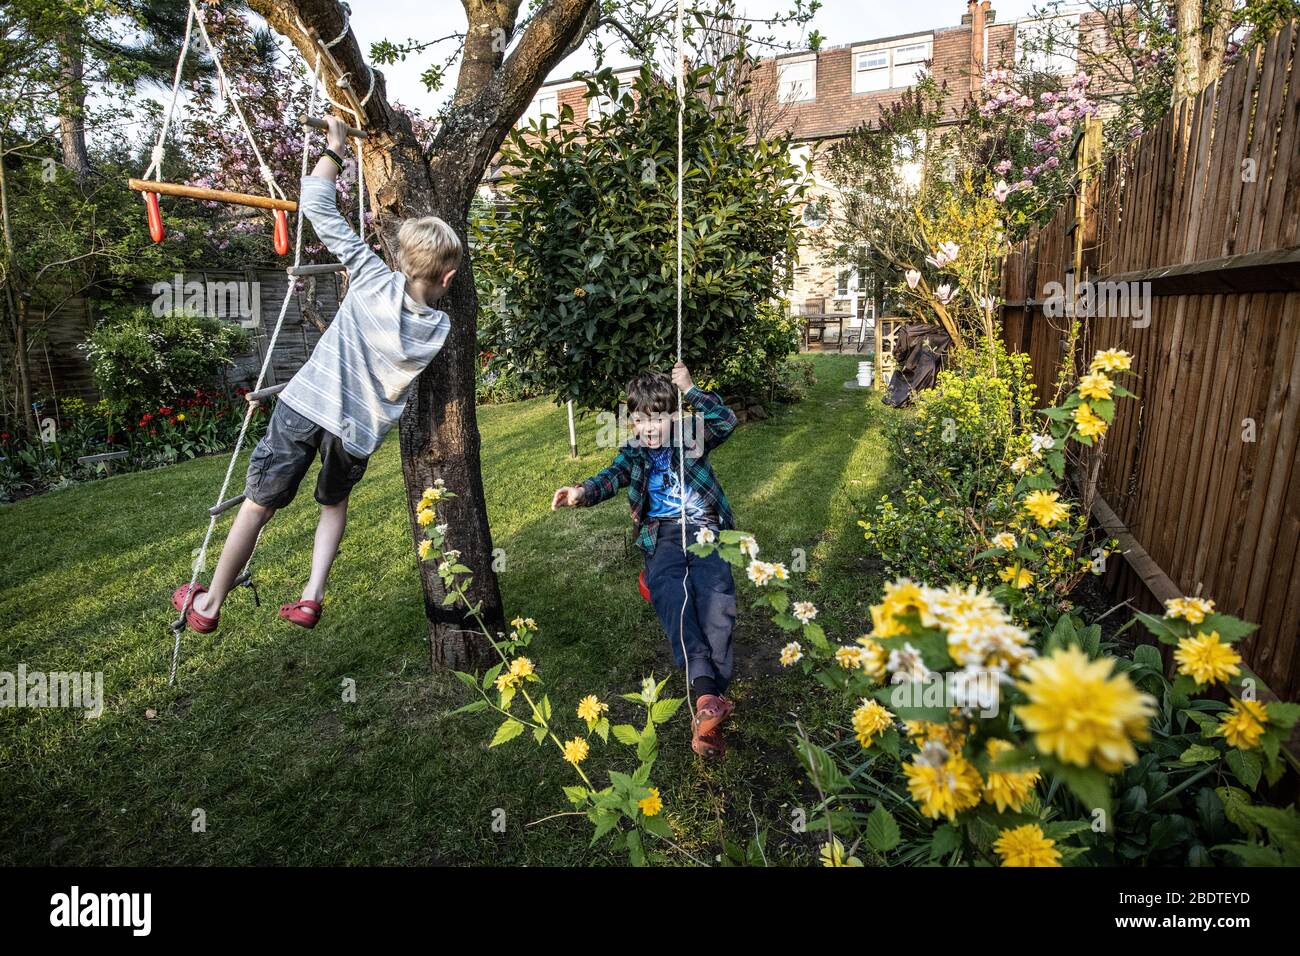 Deux jeunes frères âgés de 6 et 9 ans jouant sur une échelle de corde et de l'oscillation de corde dans leur jardin arrière, Londres, Angleterre, Royaume-Uni Banque D'Images